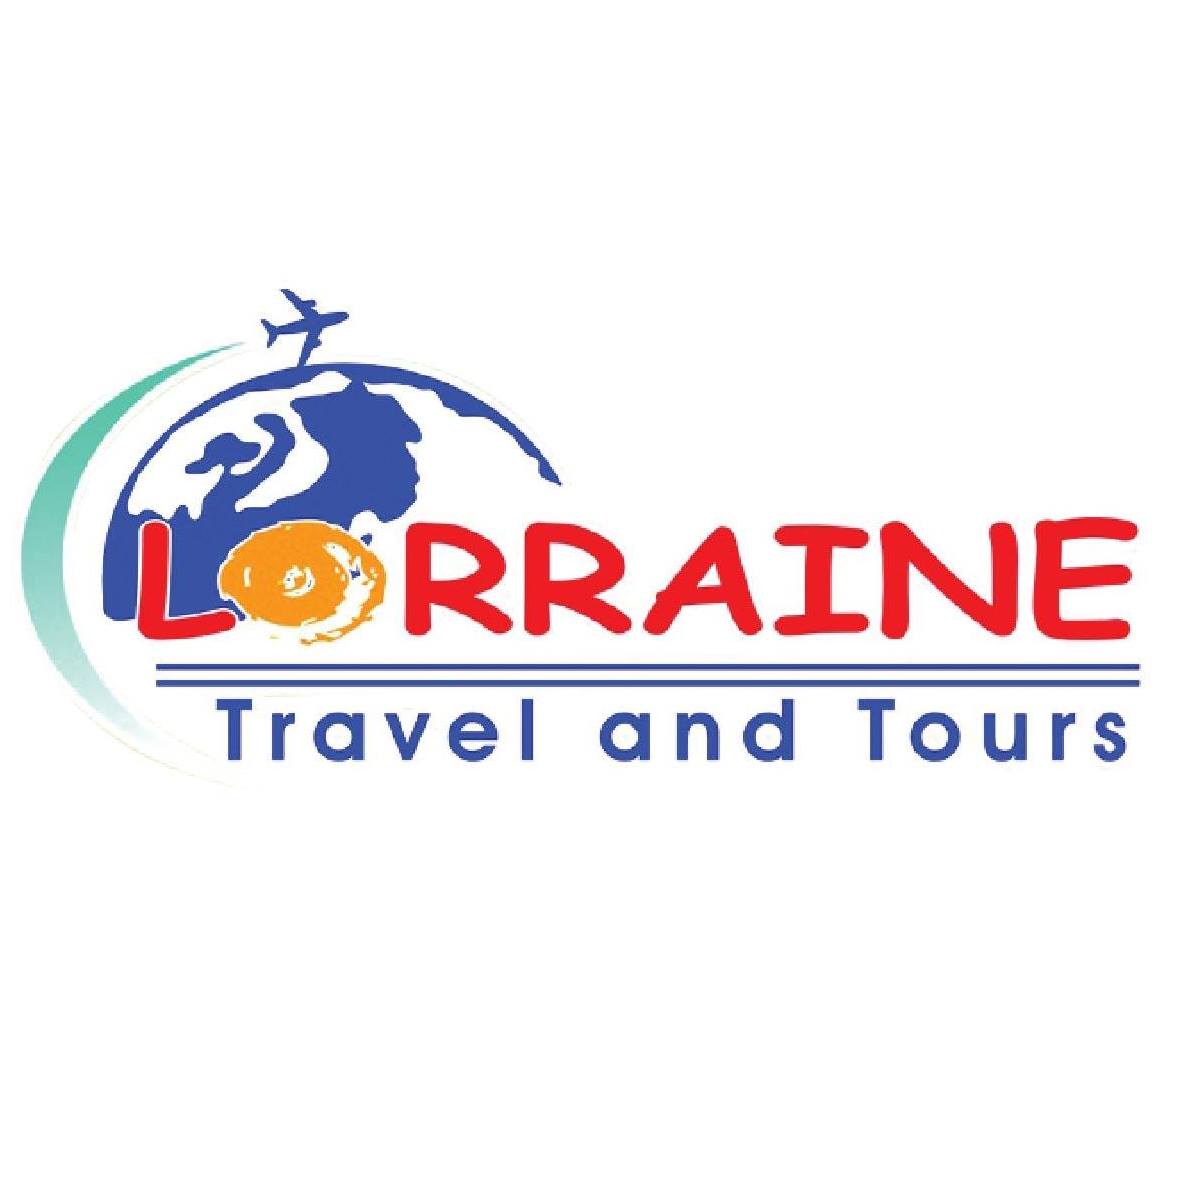 Definisi Lorraini Travel